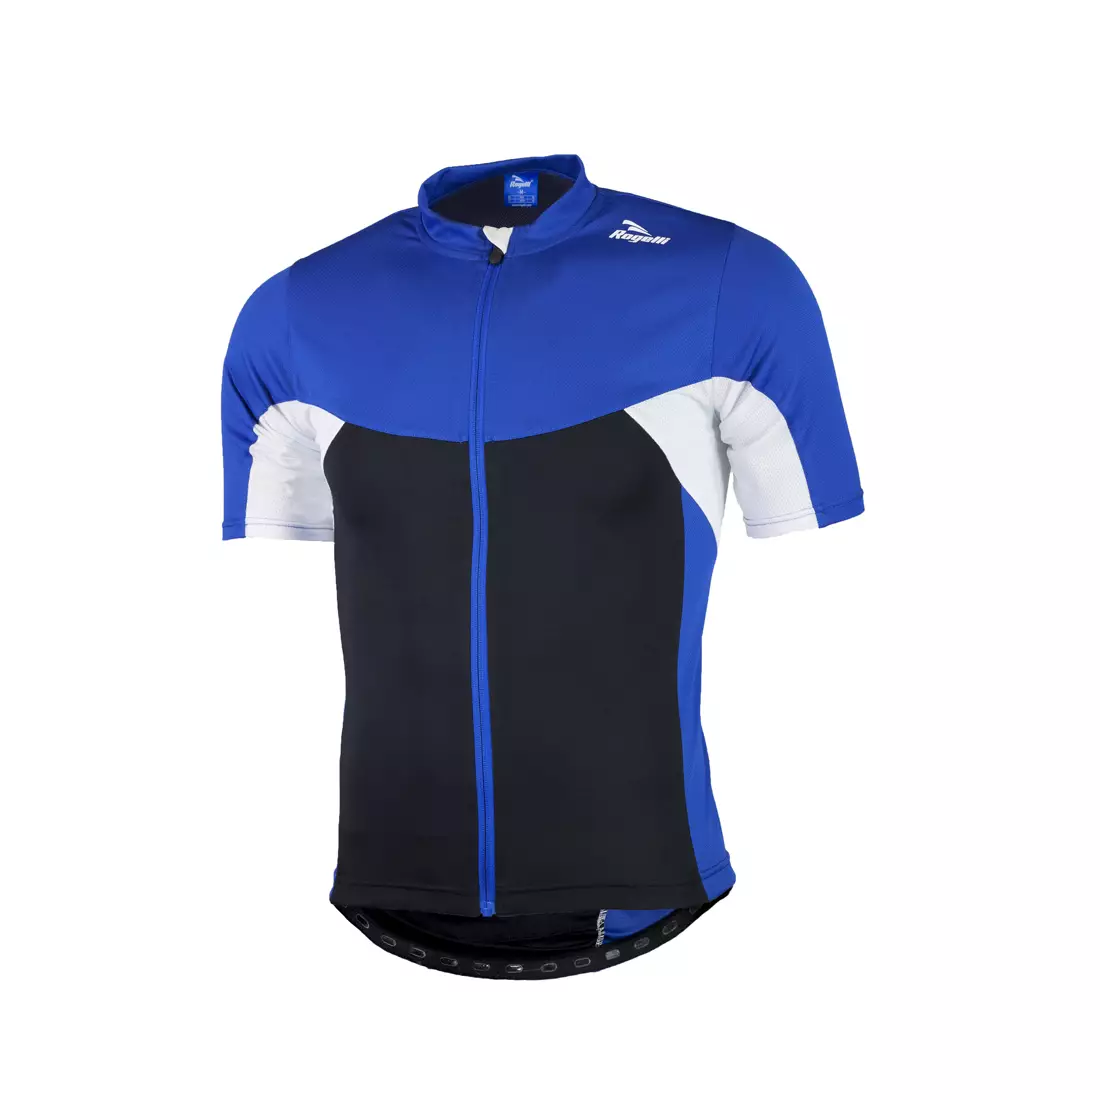 ROGELLI BIKE RECCO 2.0 pánský cyklistický dres, 001.138 - černo-modro-bílý